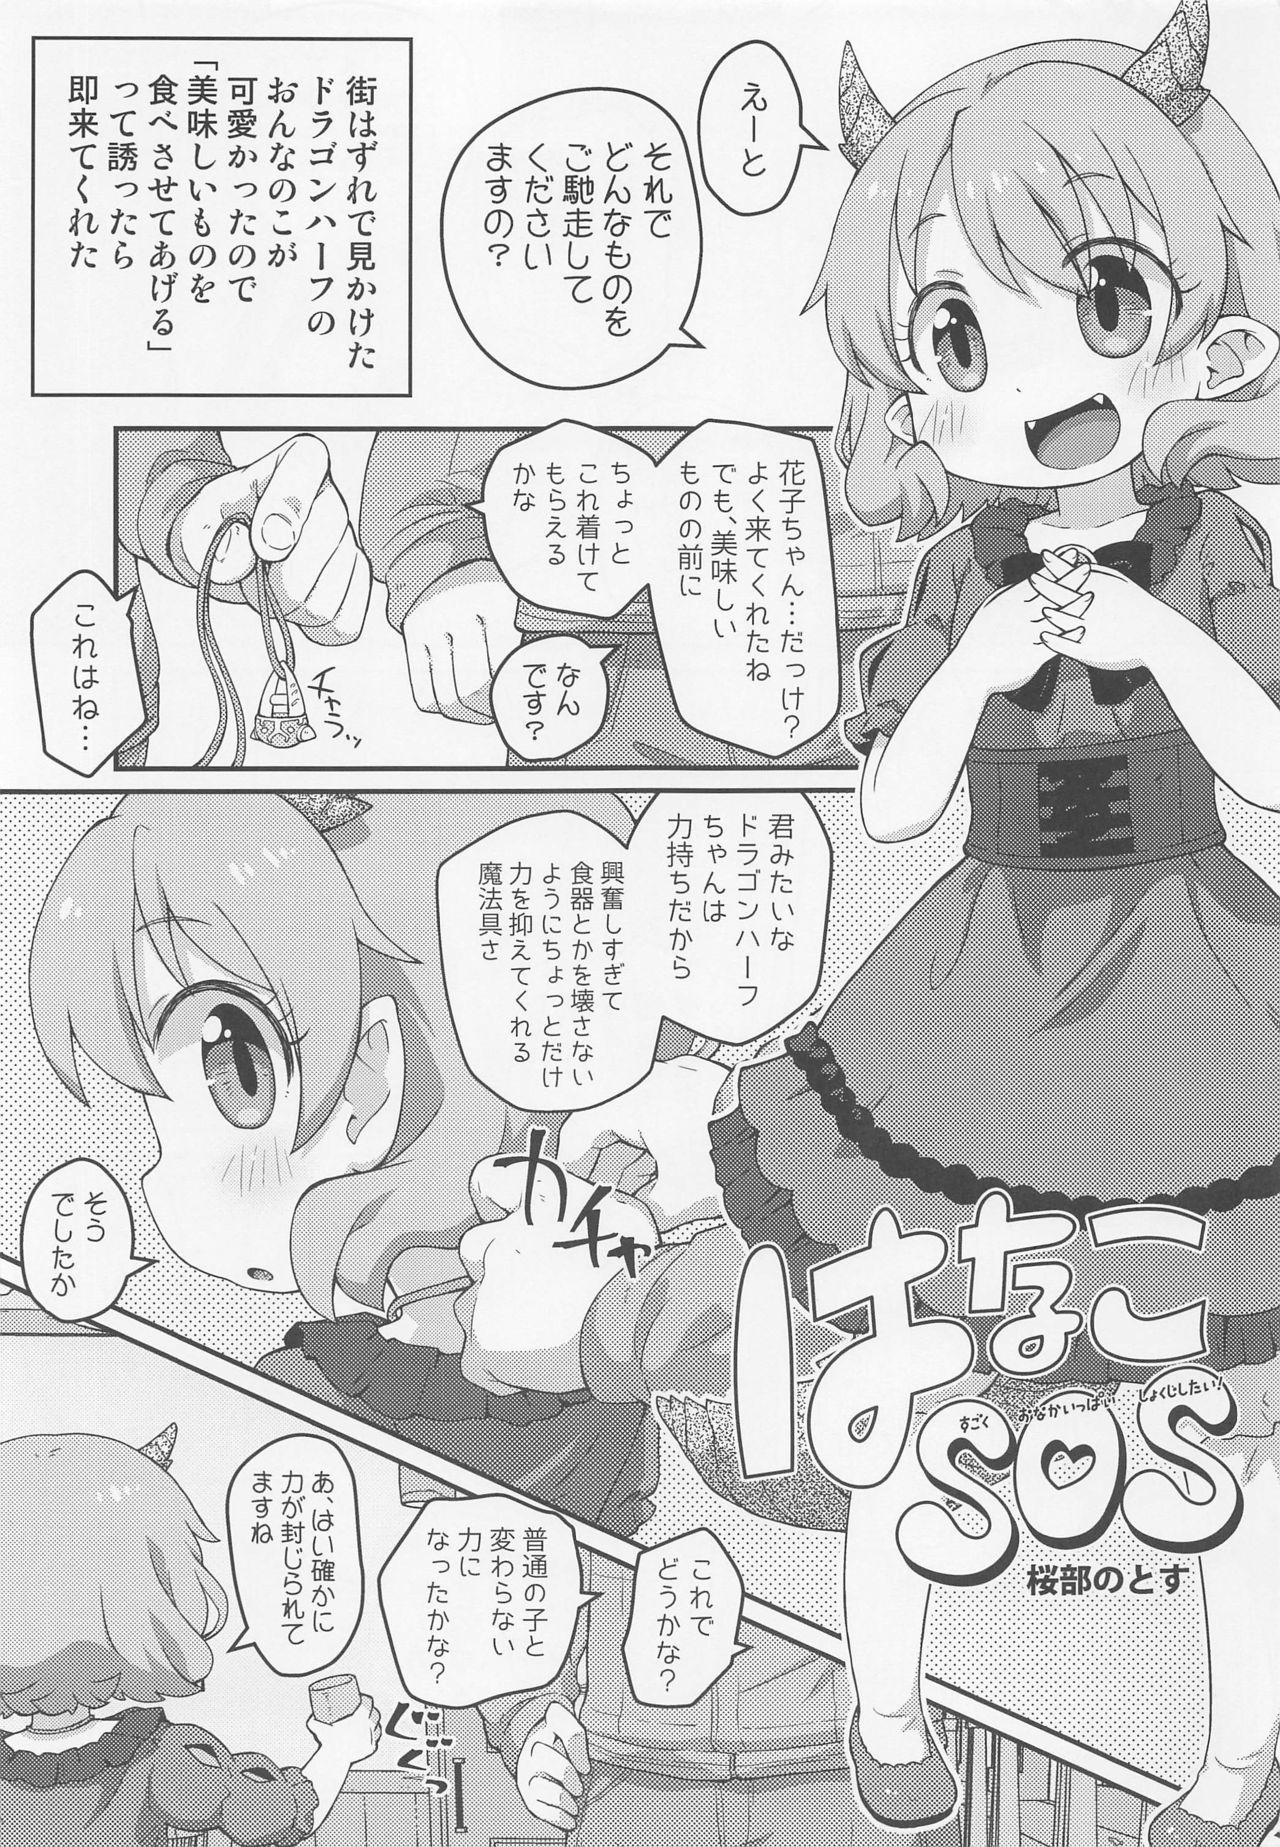 Spit Hanako SOS - Hataage kemono michi Teensex - Page 4